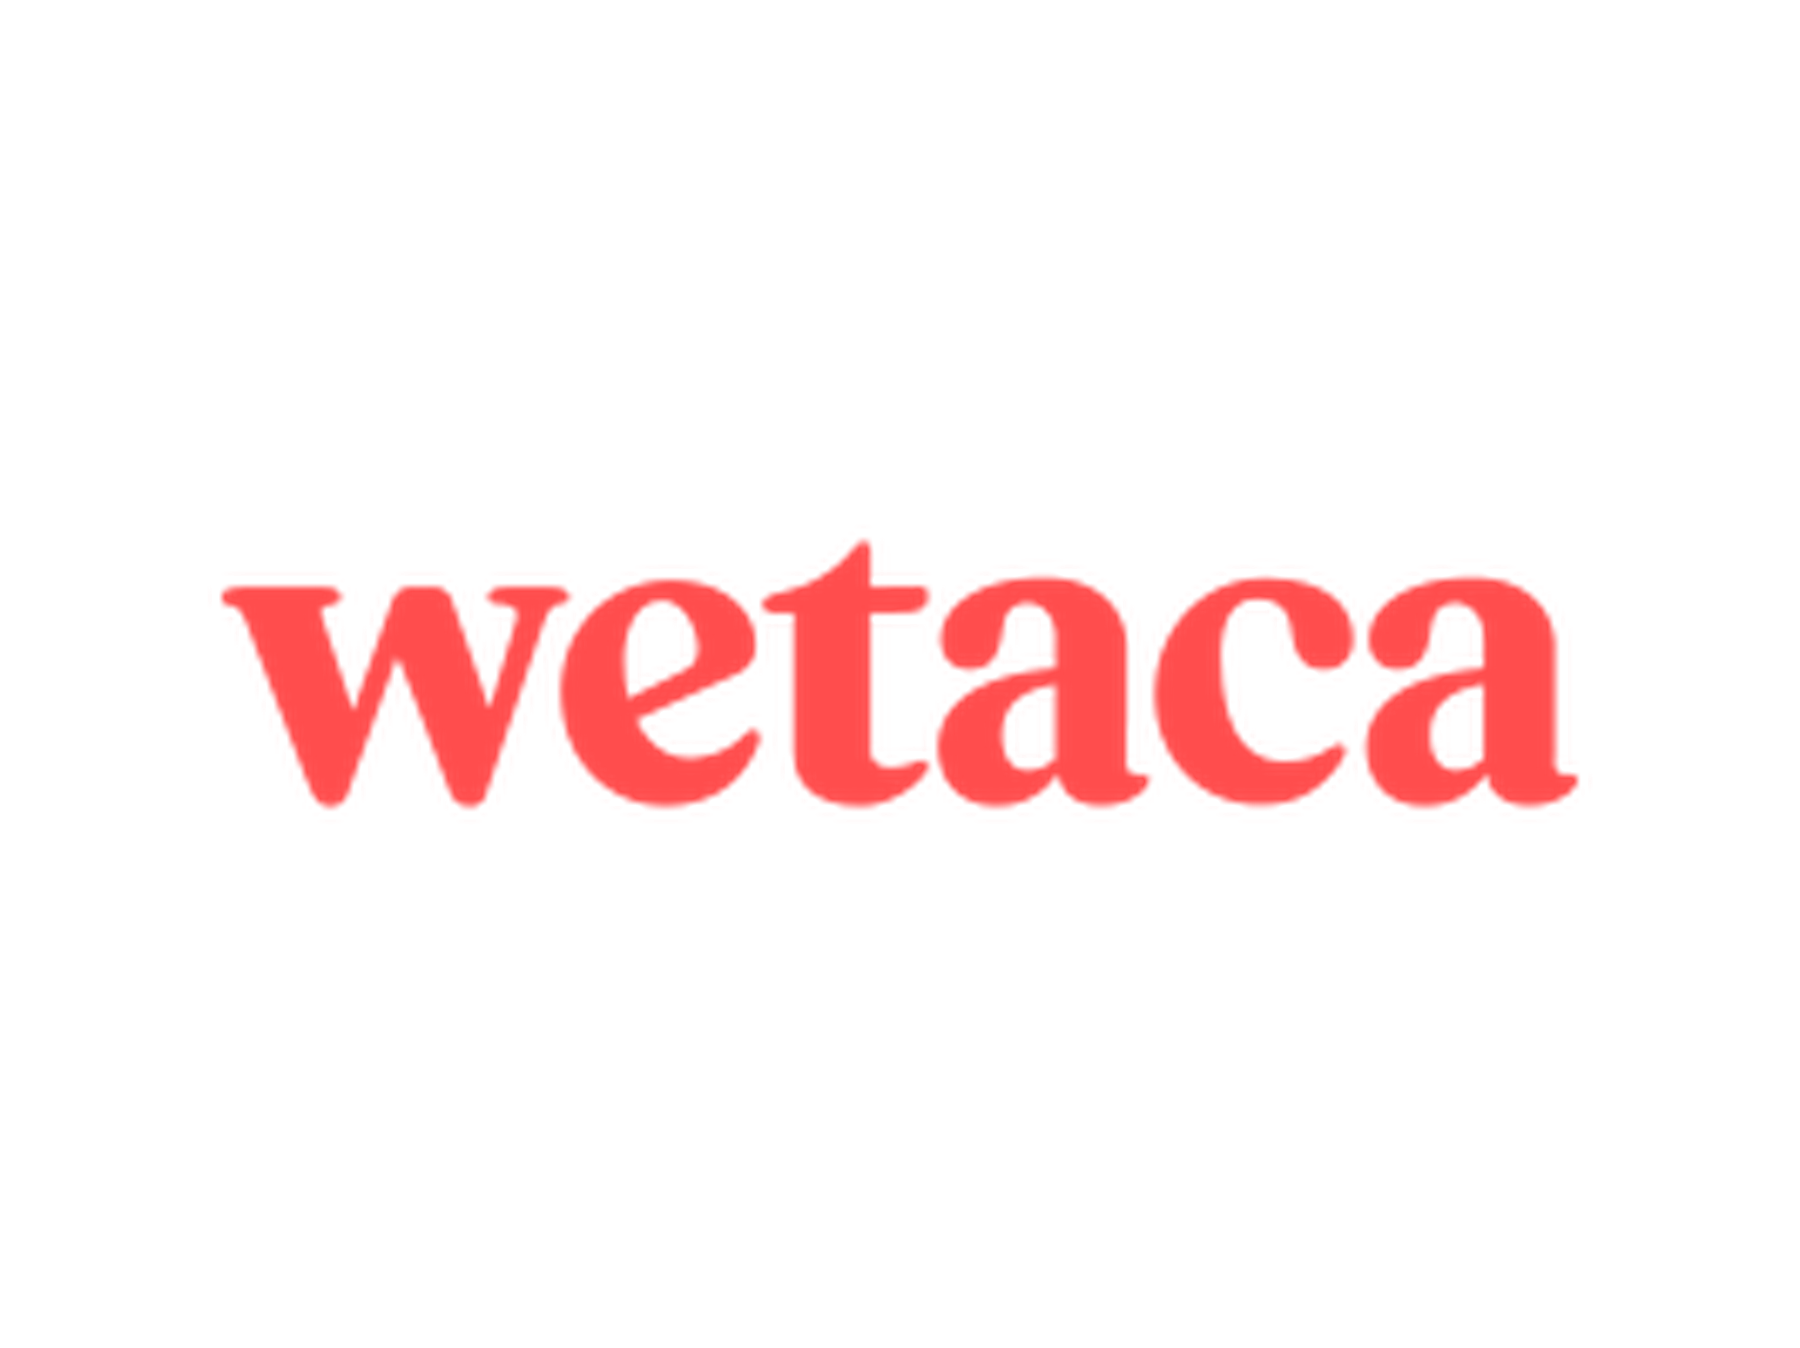 Código descuento Wetaca